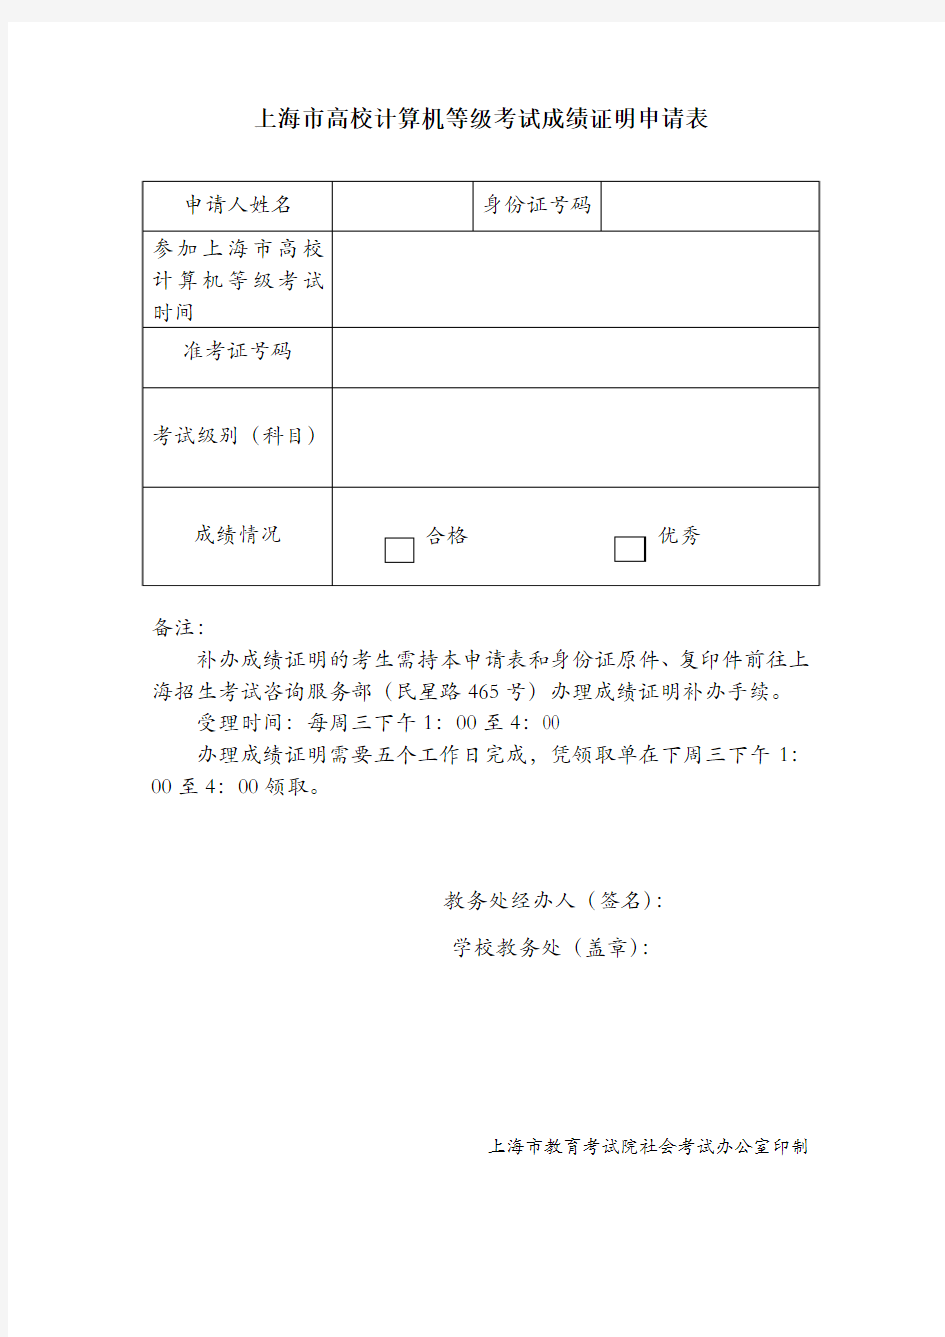 上海高校计算机等级考试成绩证明申请表